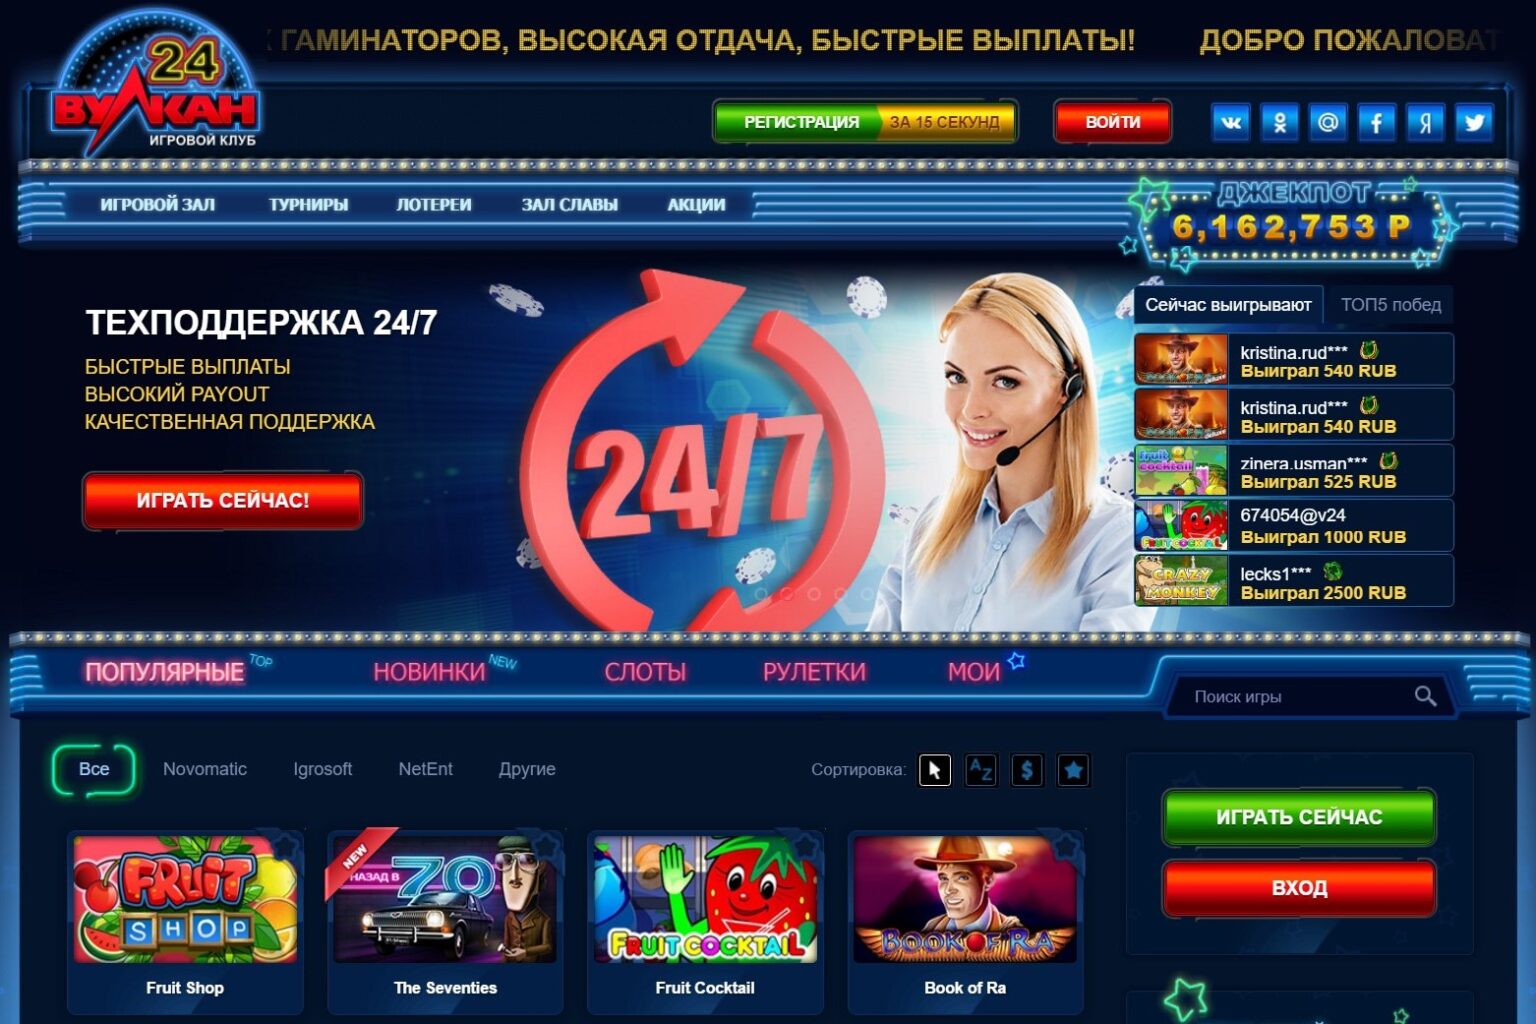 Онлайн казино вулкан 24 играть на деньги официальный сайт казино вулкан играть бесплатно онлайн 777